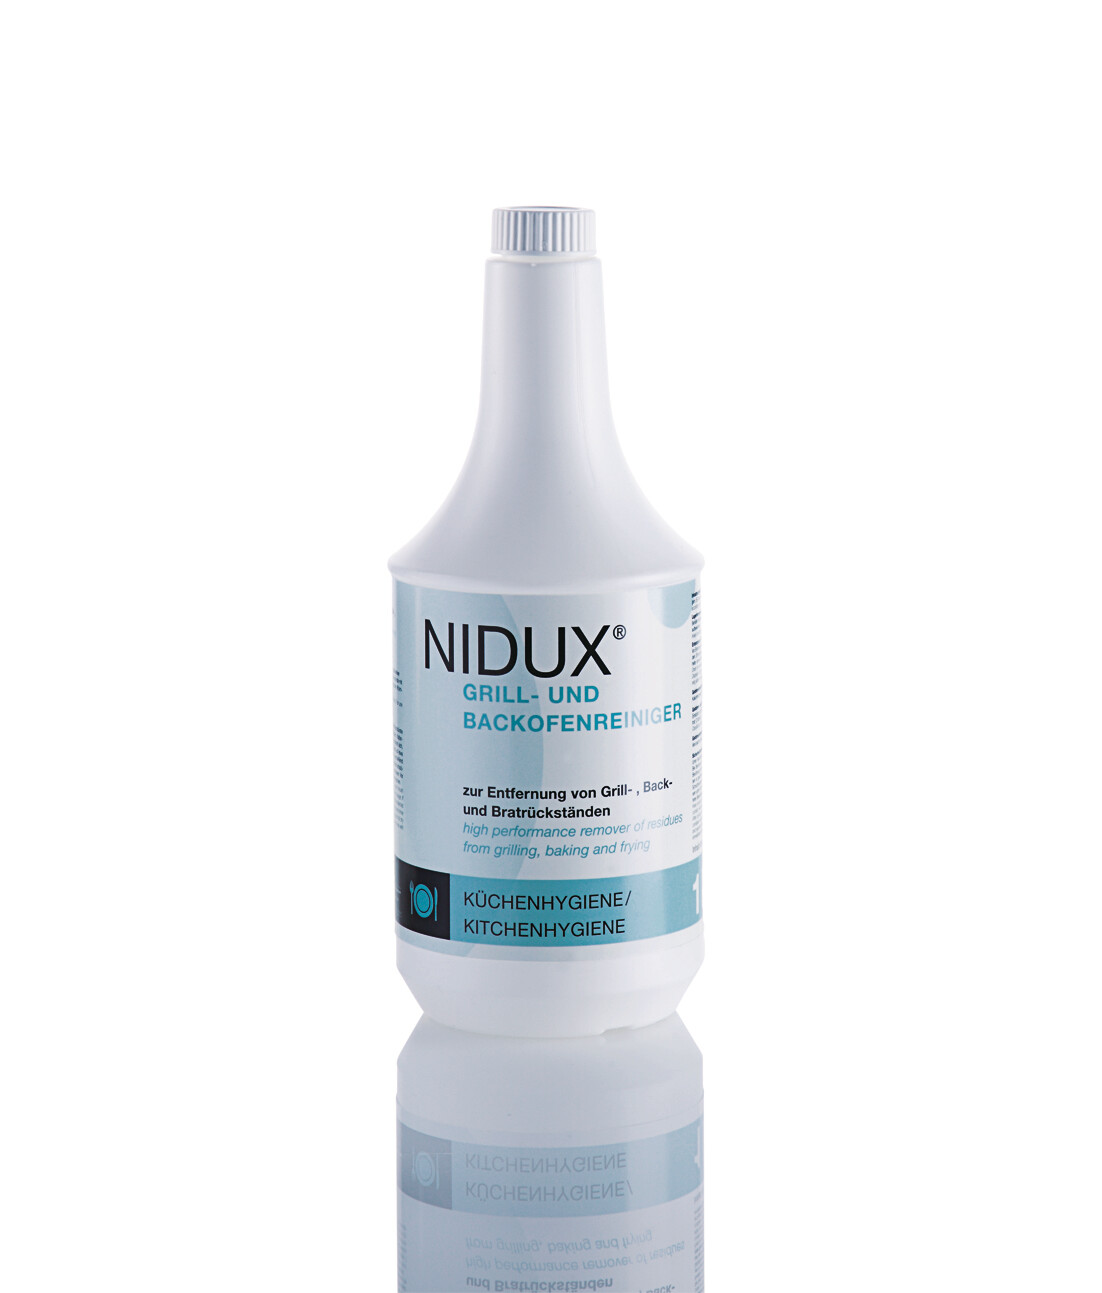 NIDUX
Grill- und Backofenspezialreiniger, gebrauchsfertig